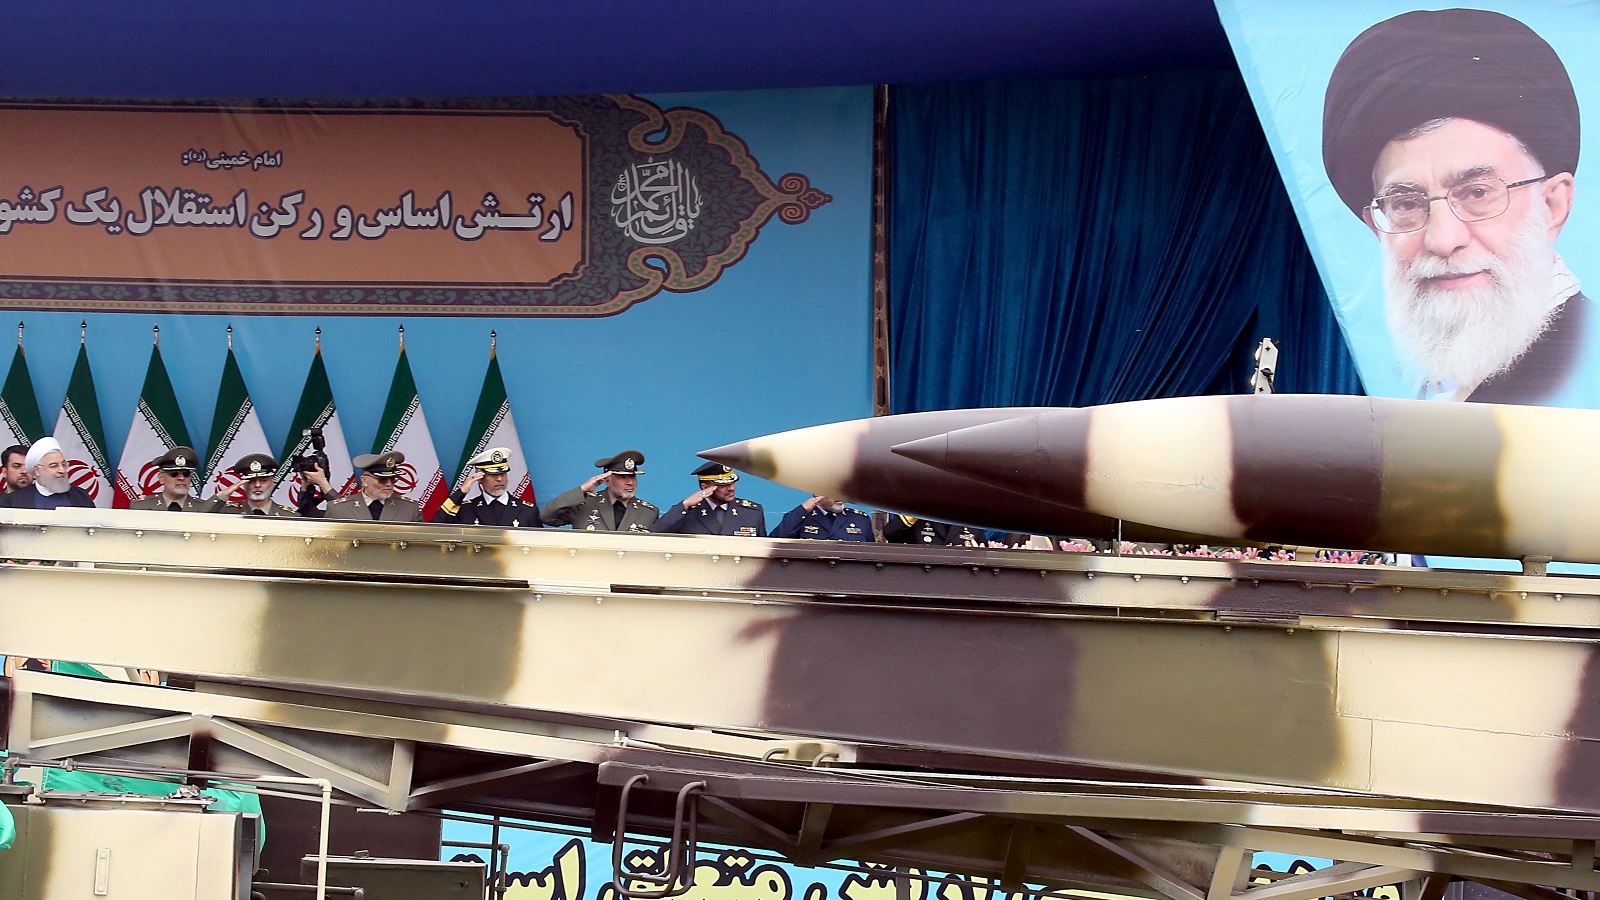 طهران واختبار القوّة من جديد